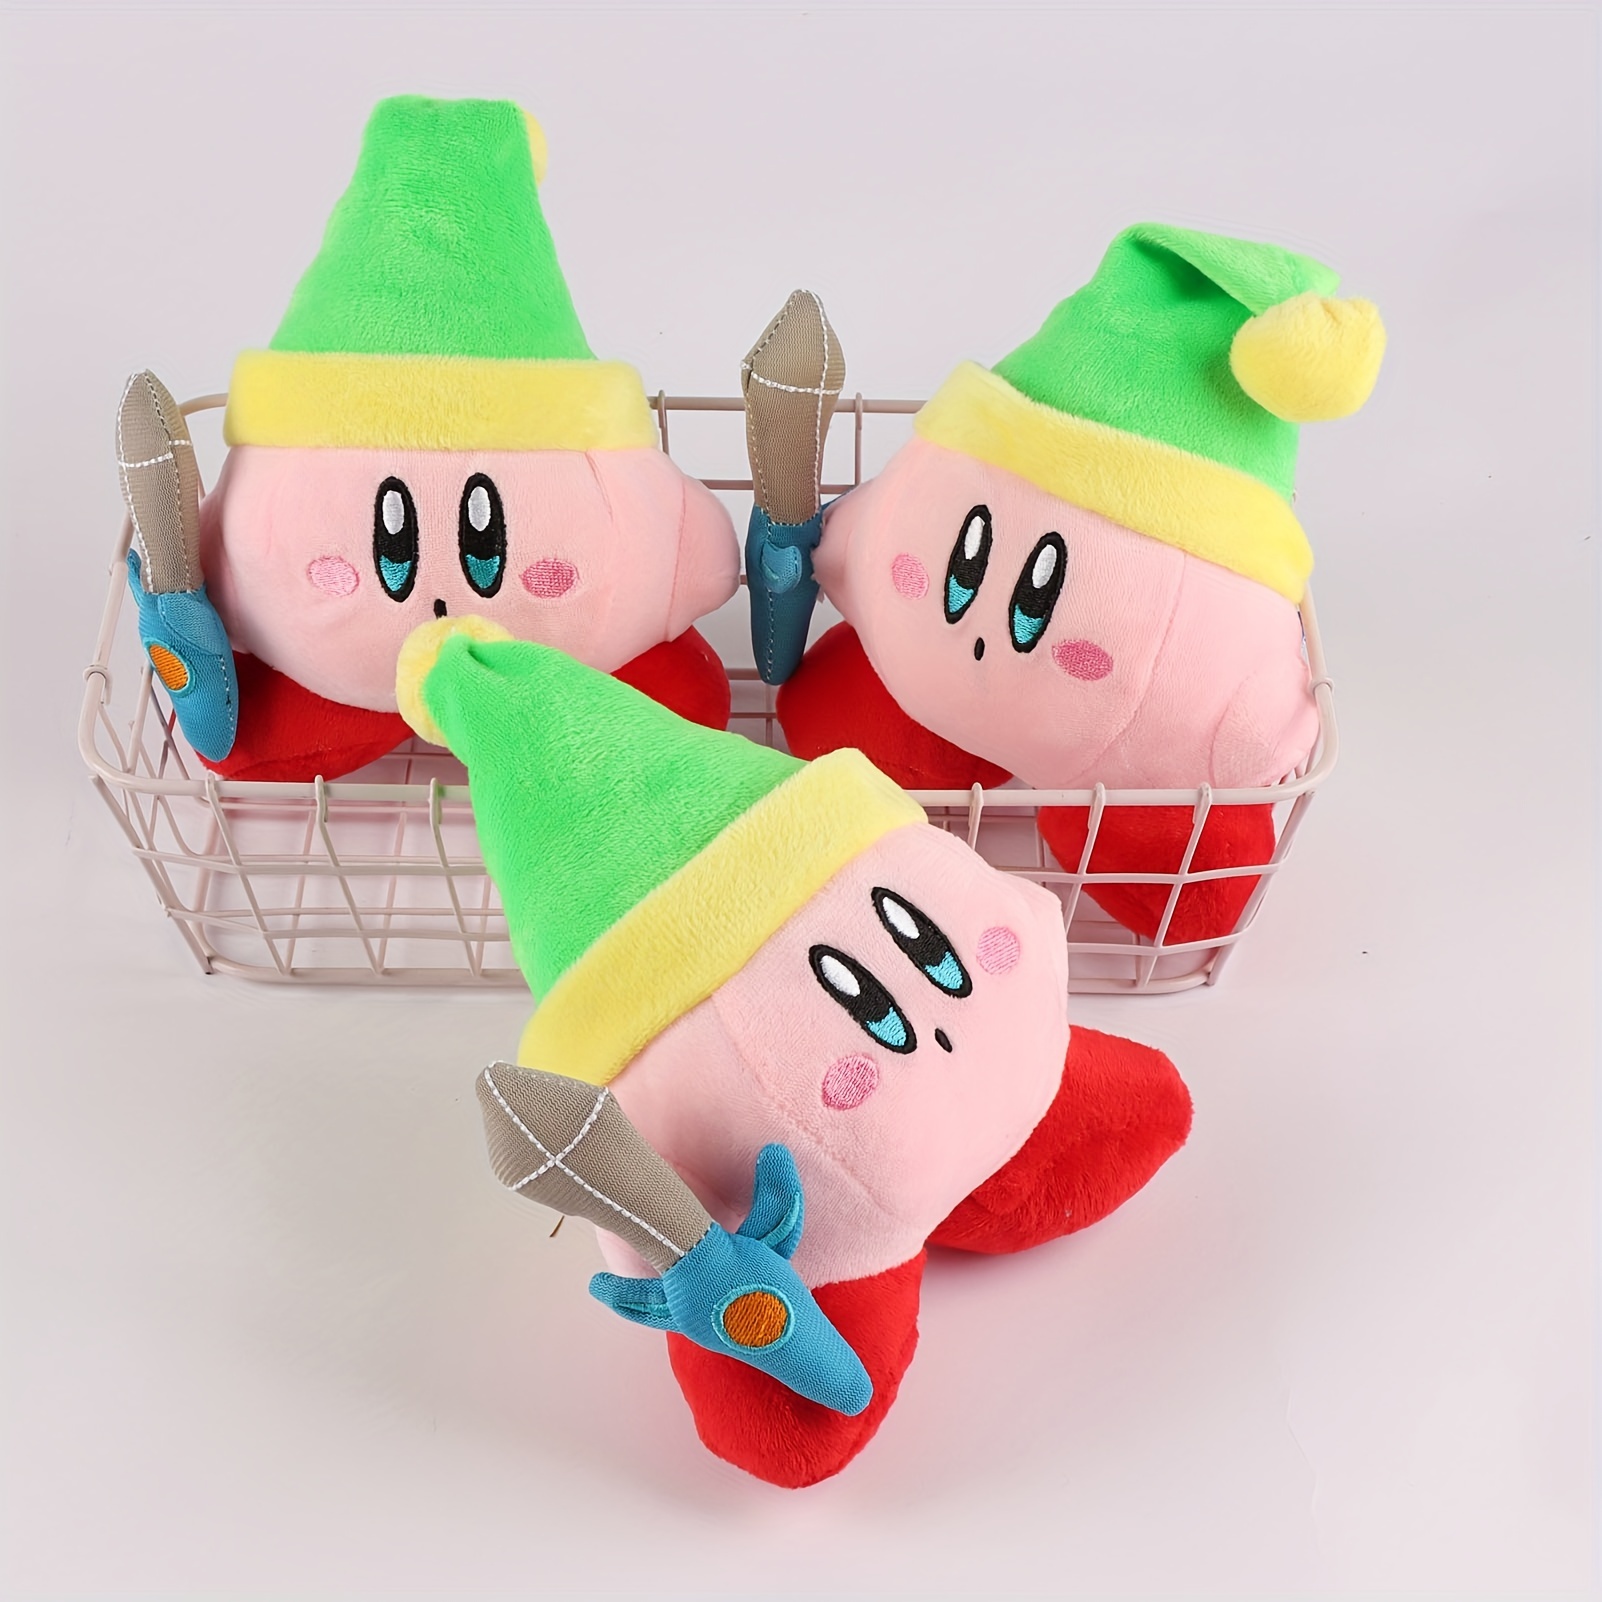 Kirby Aventuras todas las estrellas Kirby felpa, 20 cm/8 pulgadas Kirby  peluche colección juguete